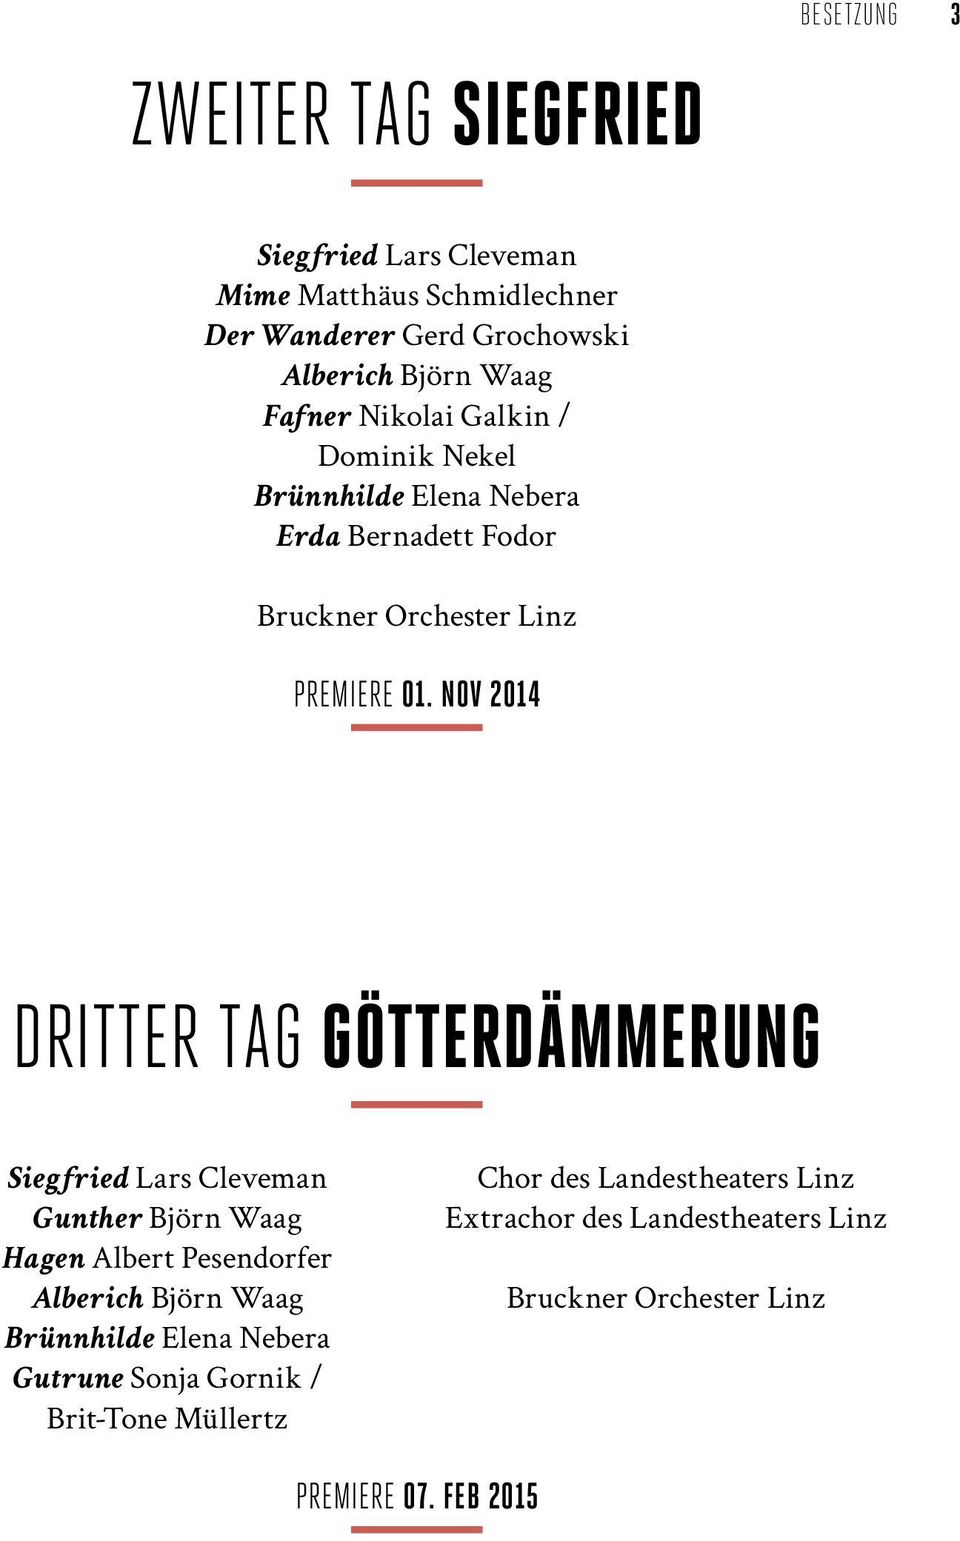 Nov 2014 Dritter Tag Götterdämmerung Siegfried Lars Cleveman Gunther Björn Waag Hagen Albert Pesendorfer Alberich Björn Waag Brünnhilde